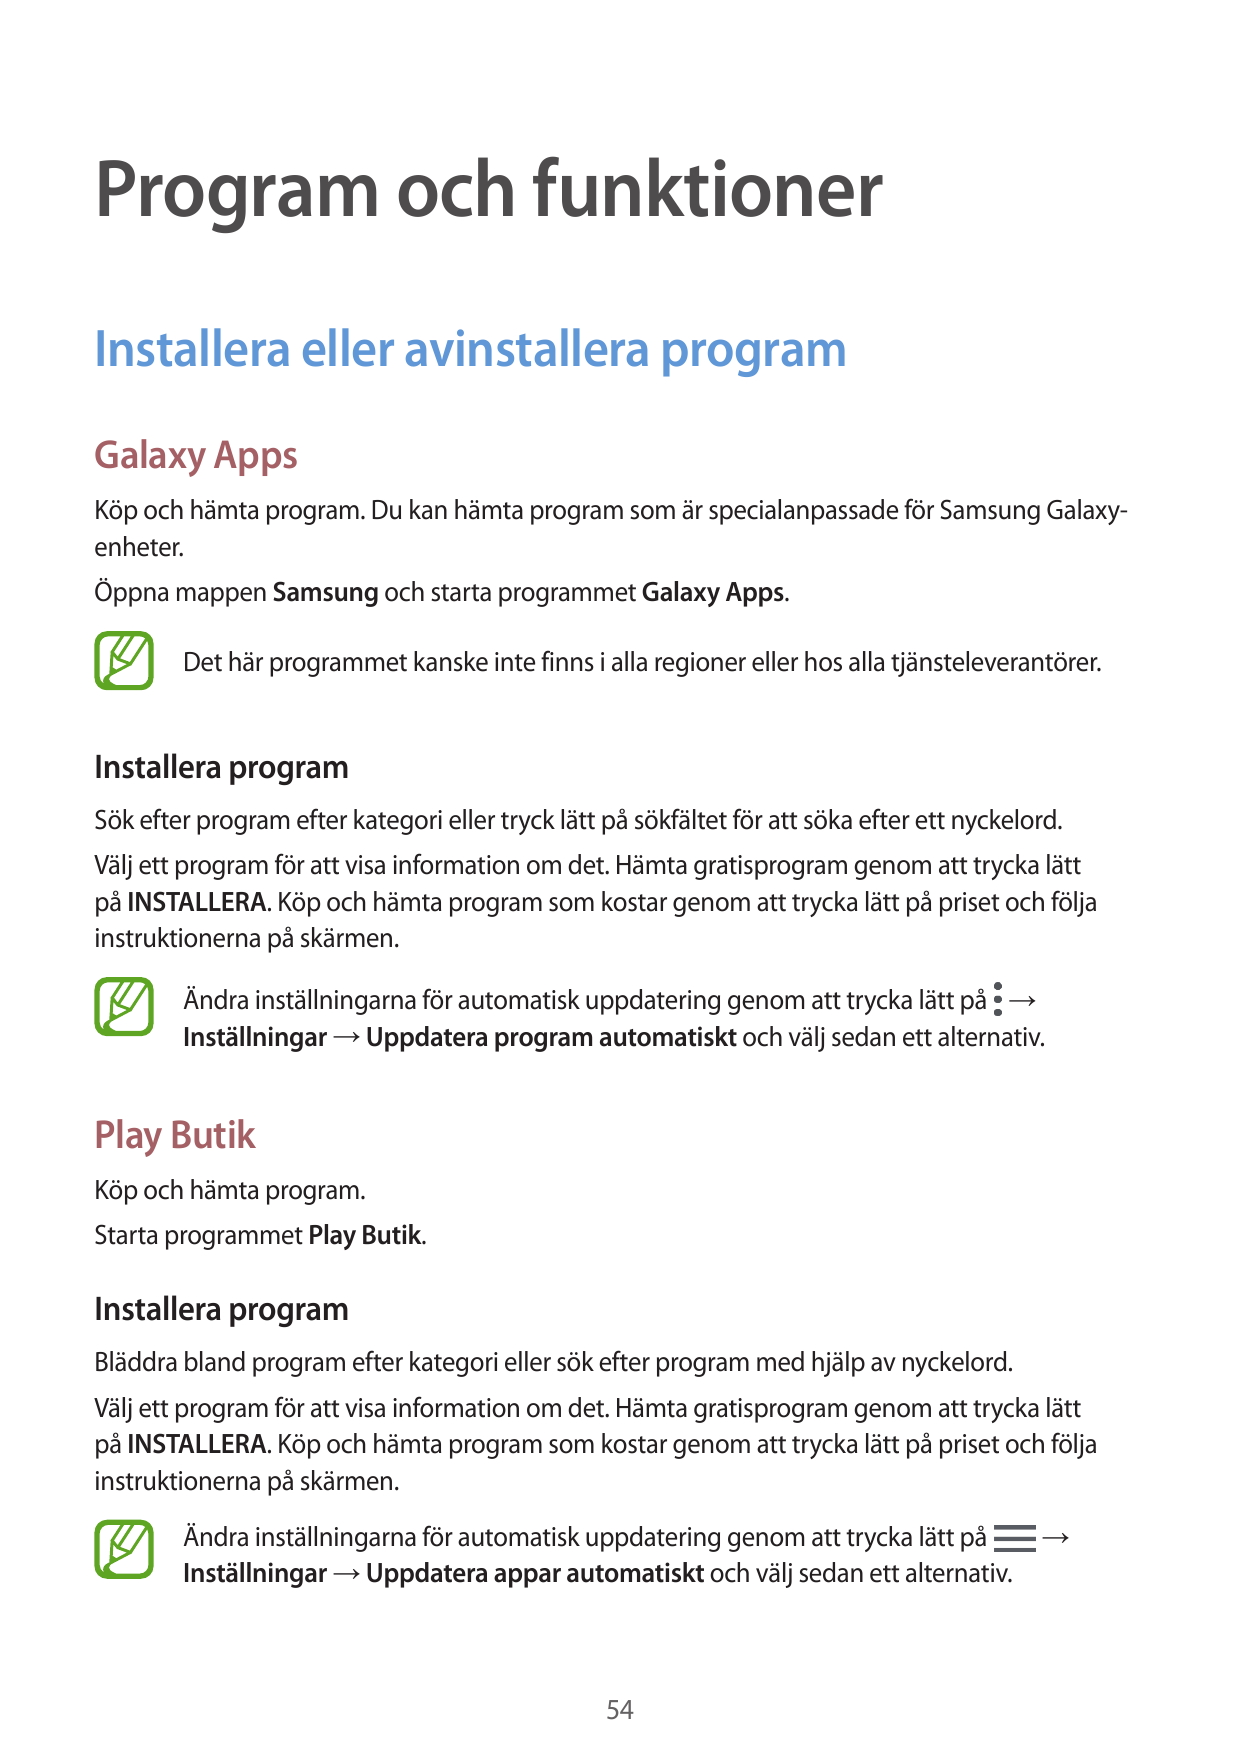 Program och funktionerInstallera eller avinstallera programGalaxy AppsKöp och hämta program. Du kan hämta program som är special